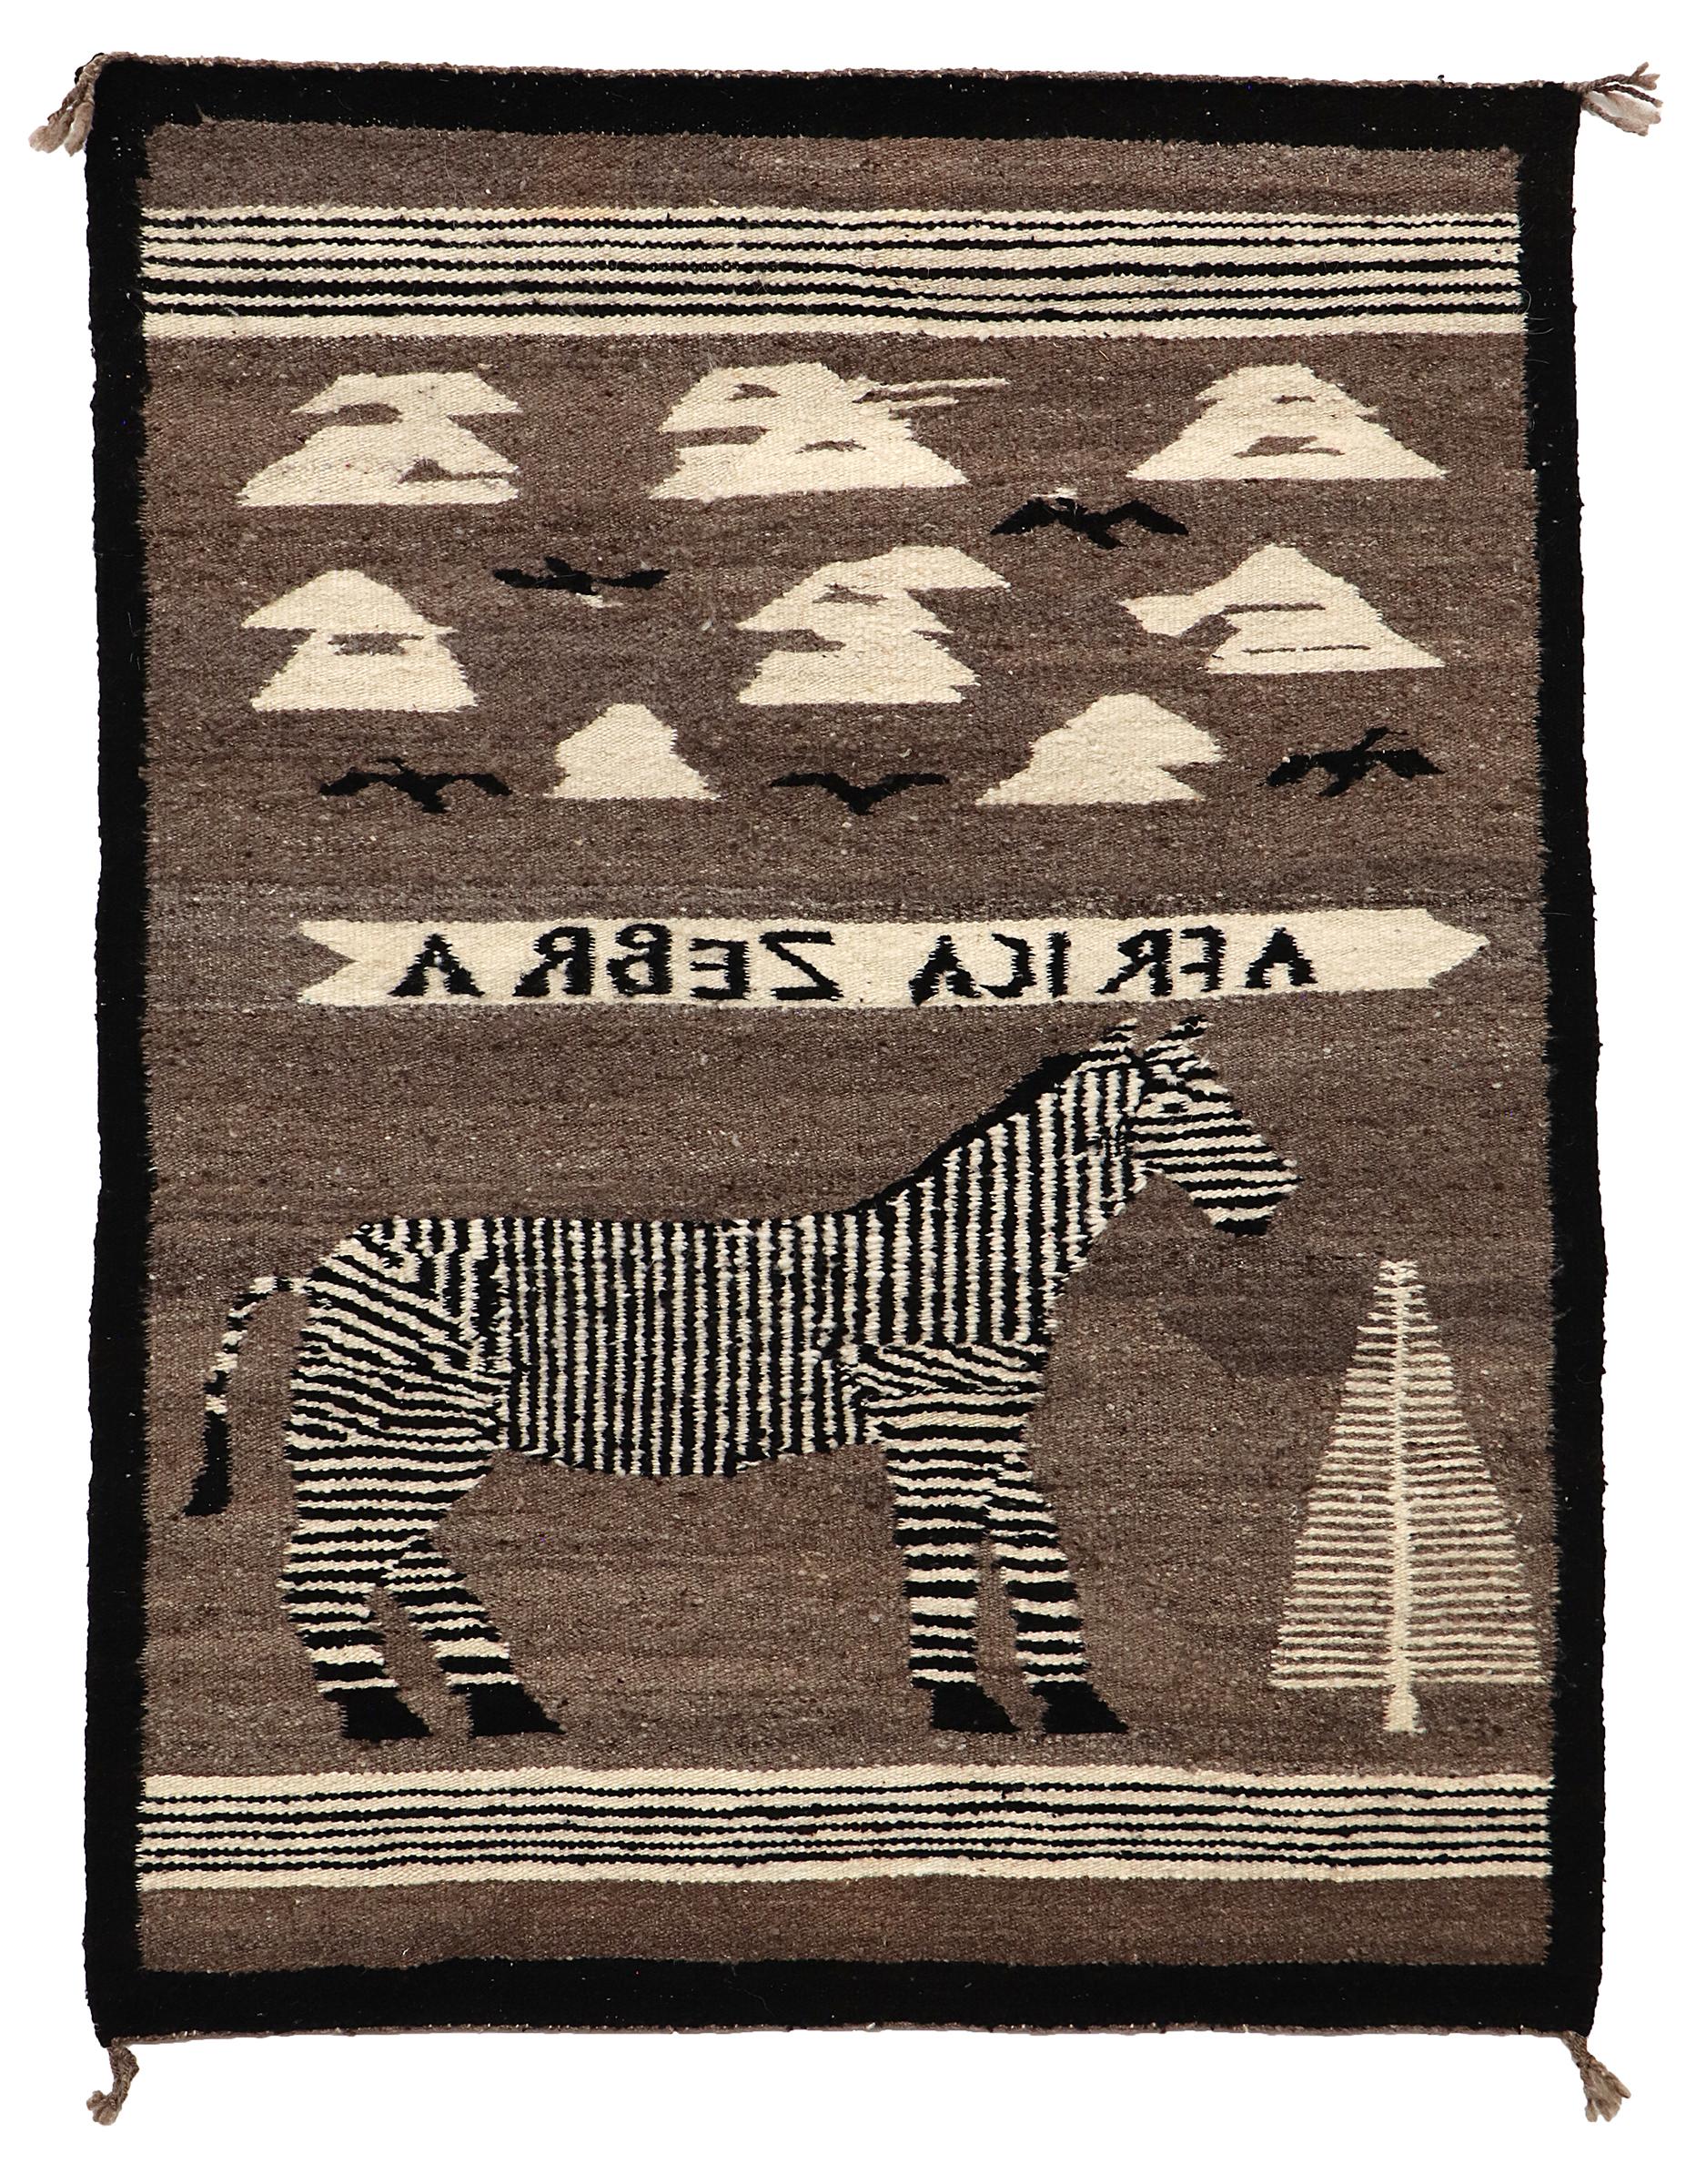 Bildhafter Navajo-Teppich aus den 1950er Jahren. Zu den Bildelementen in diesem handgewebten Textil gehören ein afrikanisches Zebra, ein Baum, Wolken und Vögel sowie die Worte,  